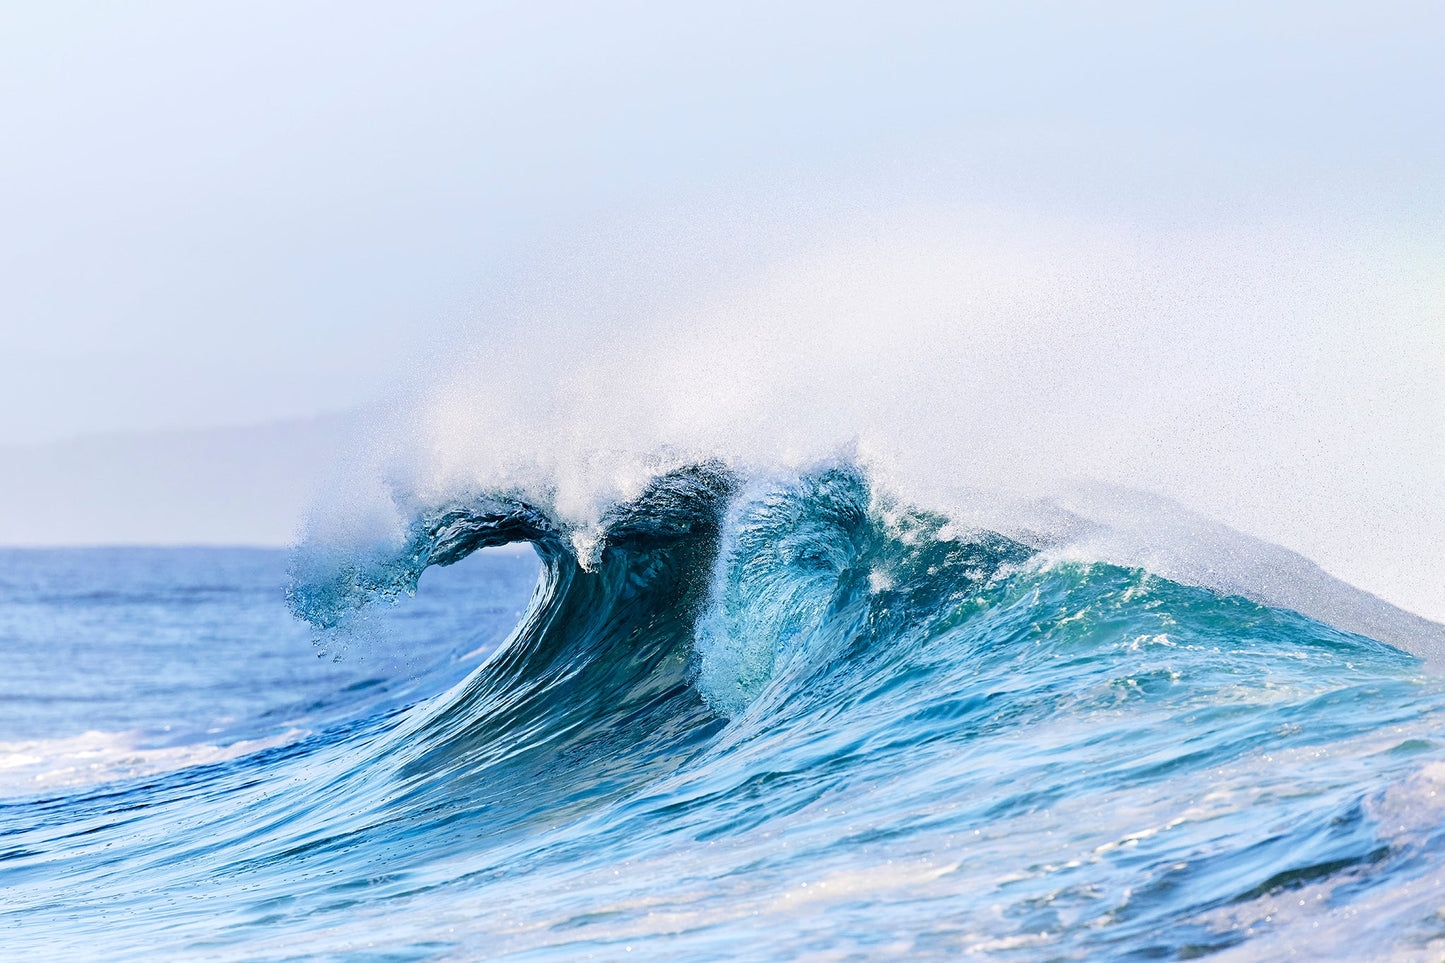 Blue curl - Breaking wave Snapper Rocks, Gold Coast